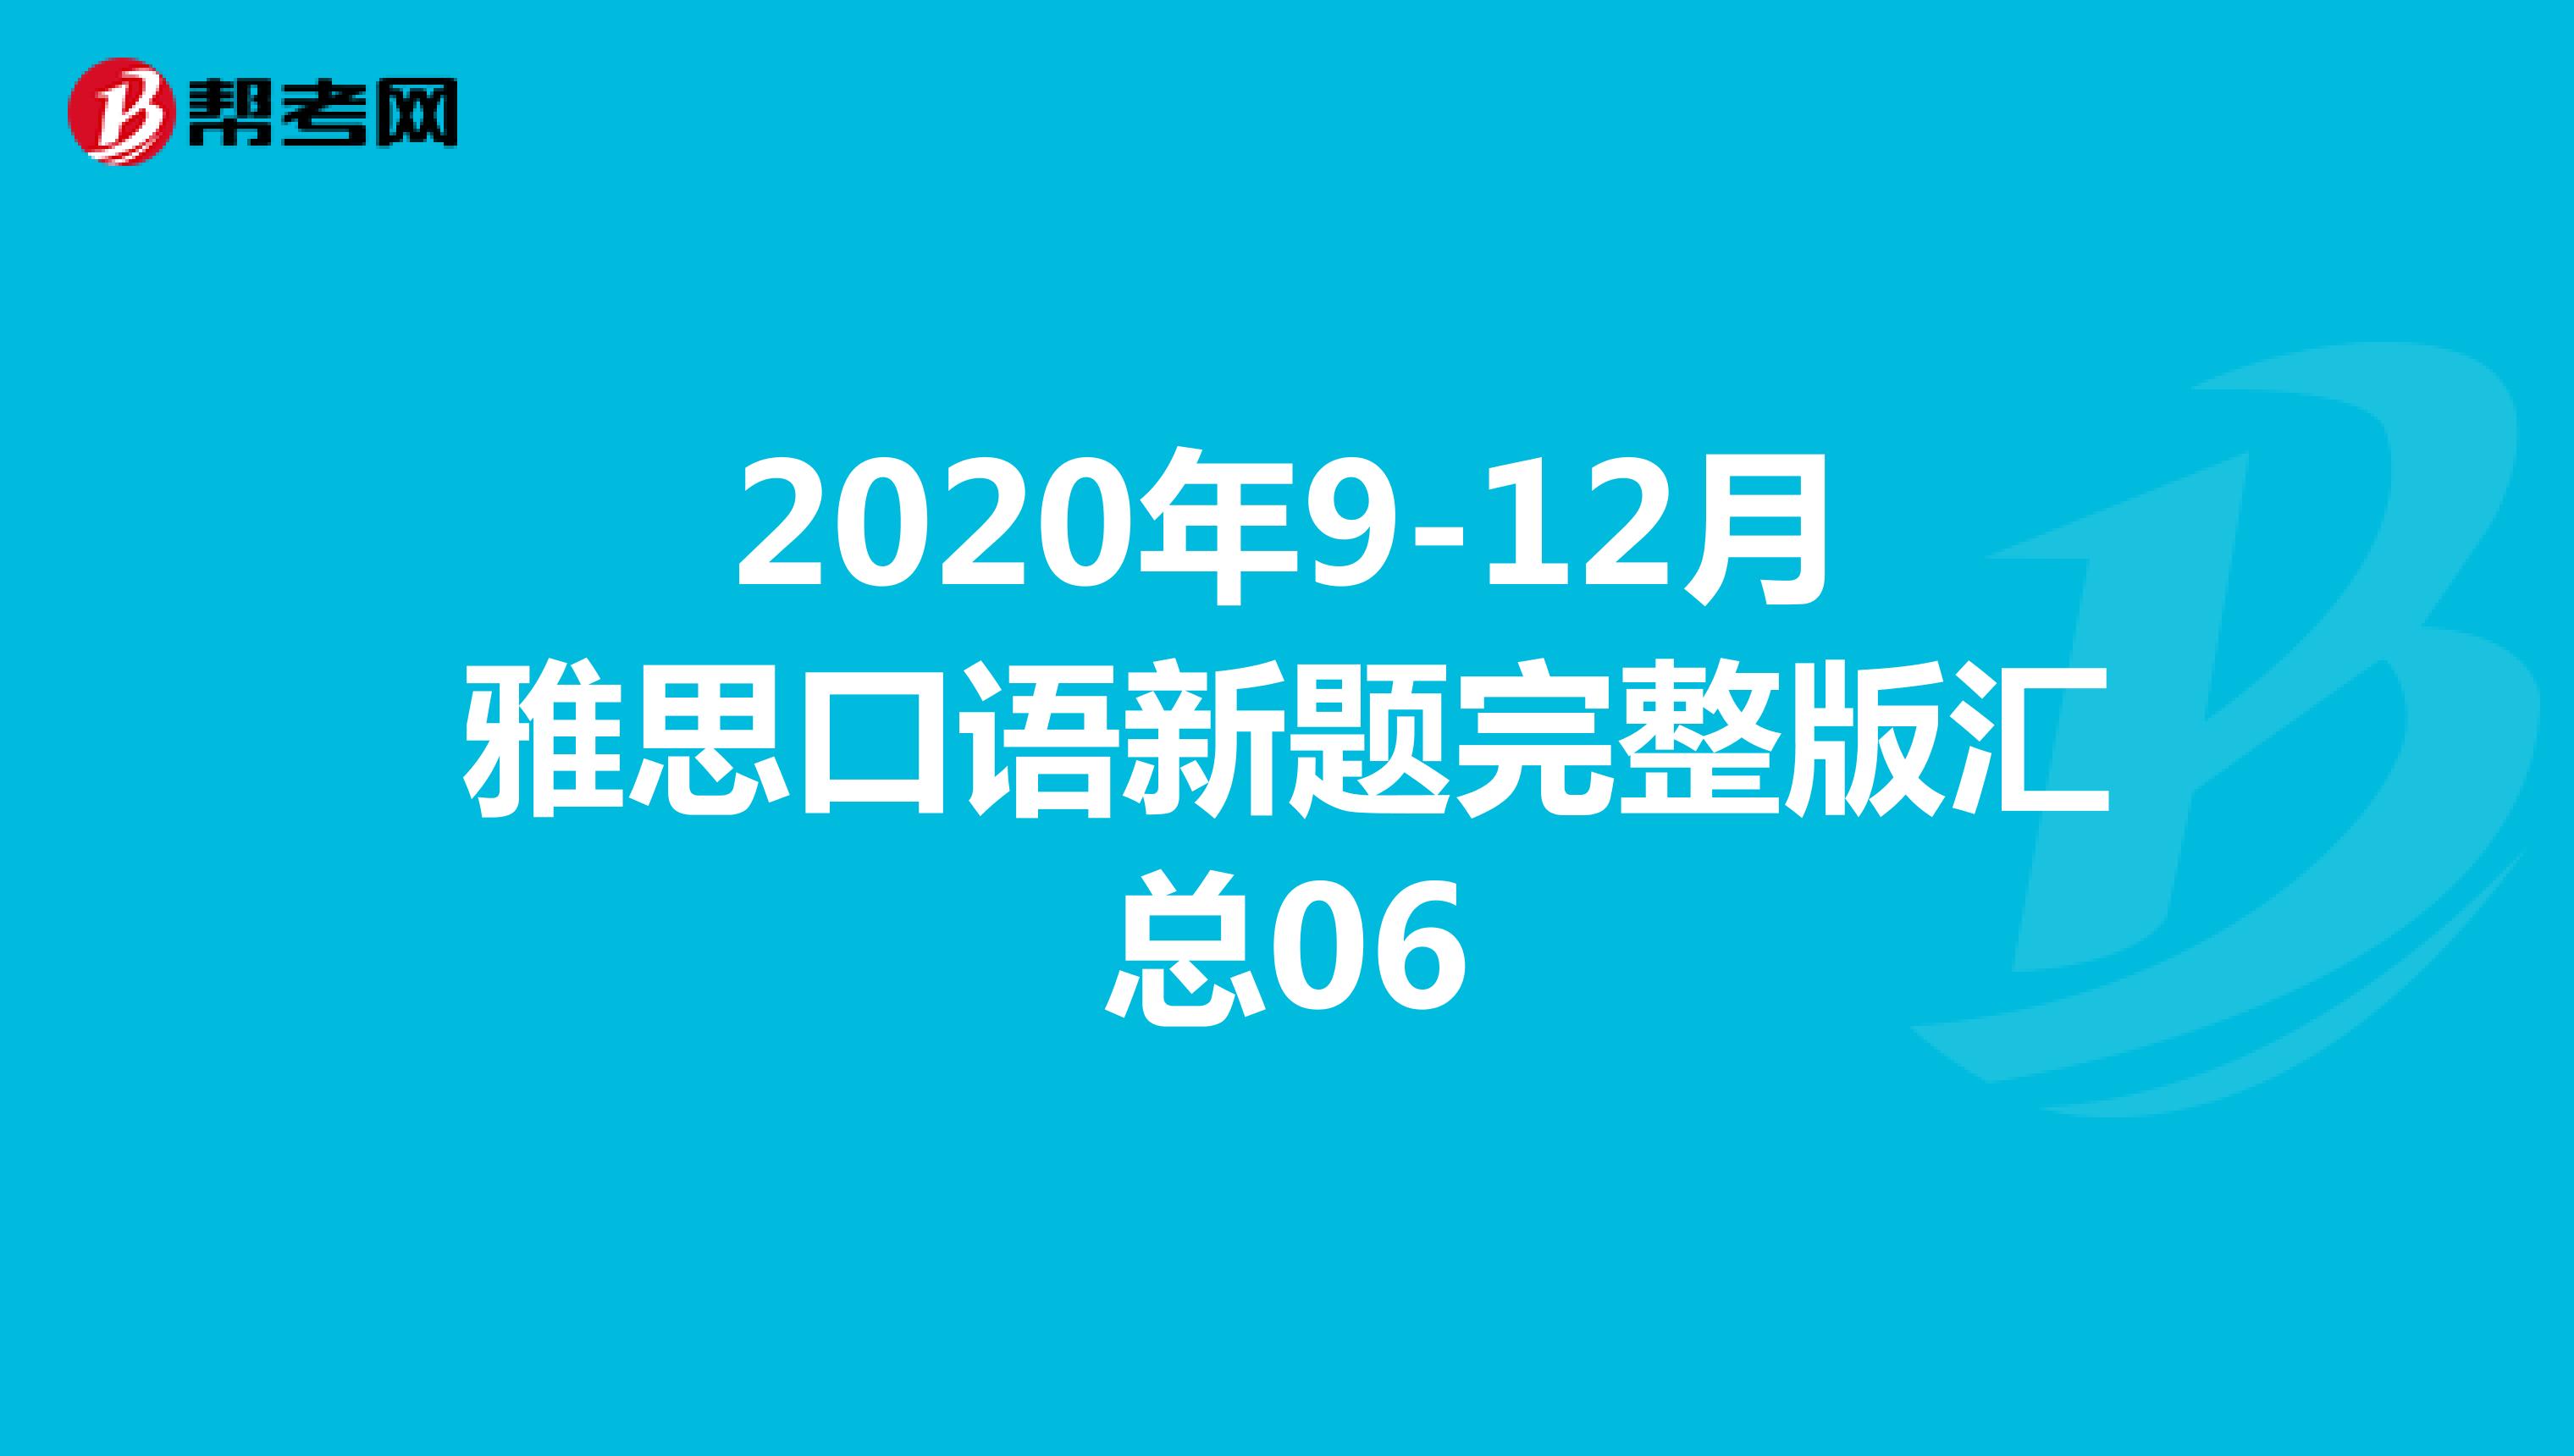 2020年9-12月雅思口语新题完整版汇总06